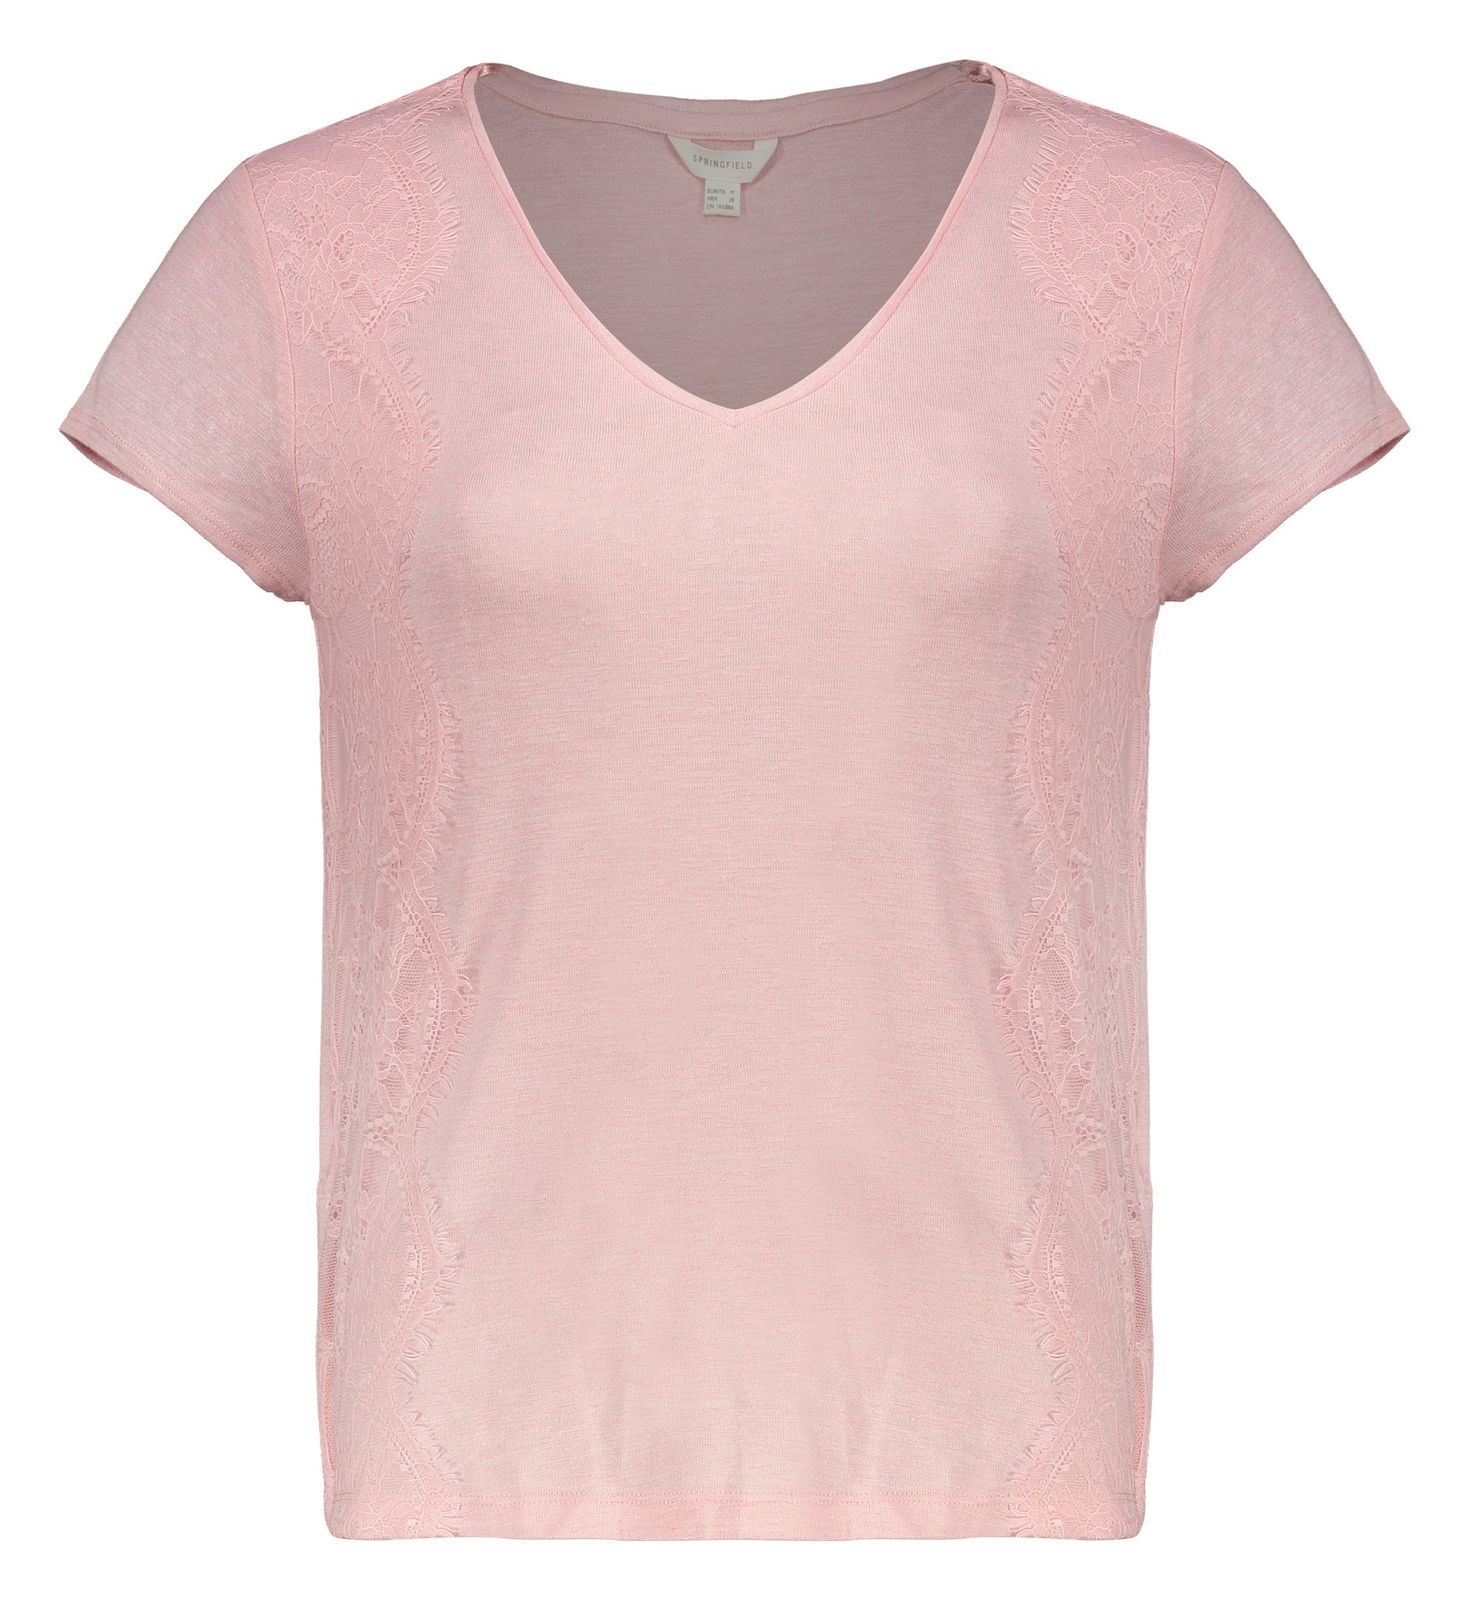 تی شرت زنانه اسپرینگ فیلد مدل 8863709-PINKS